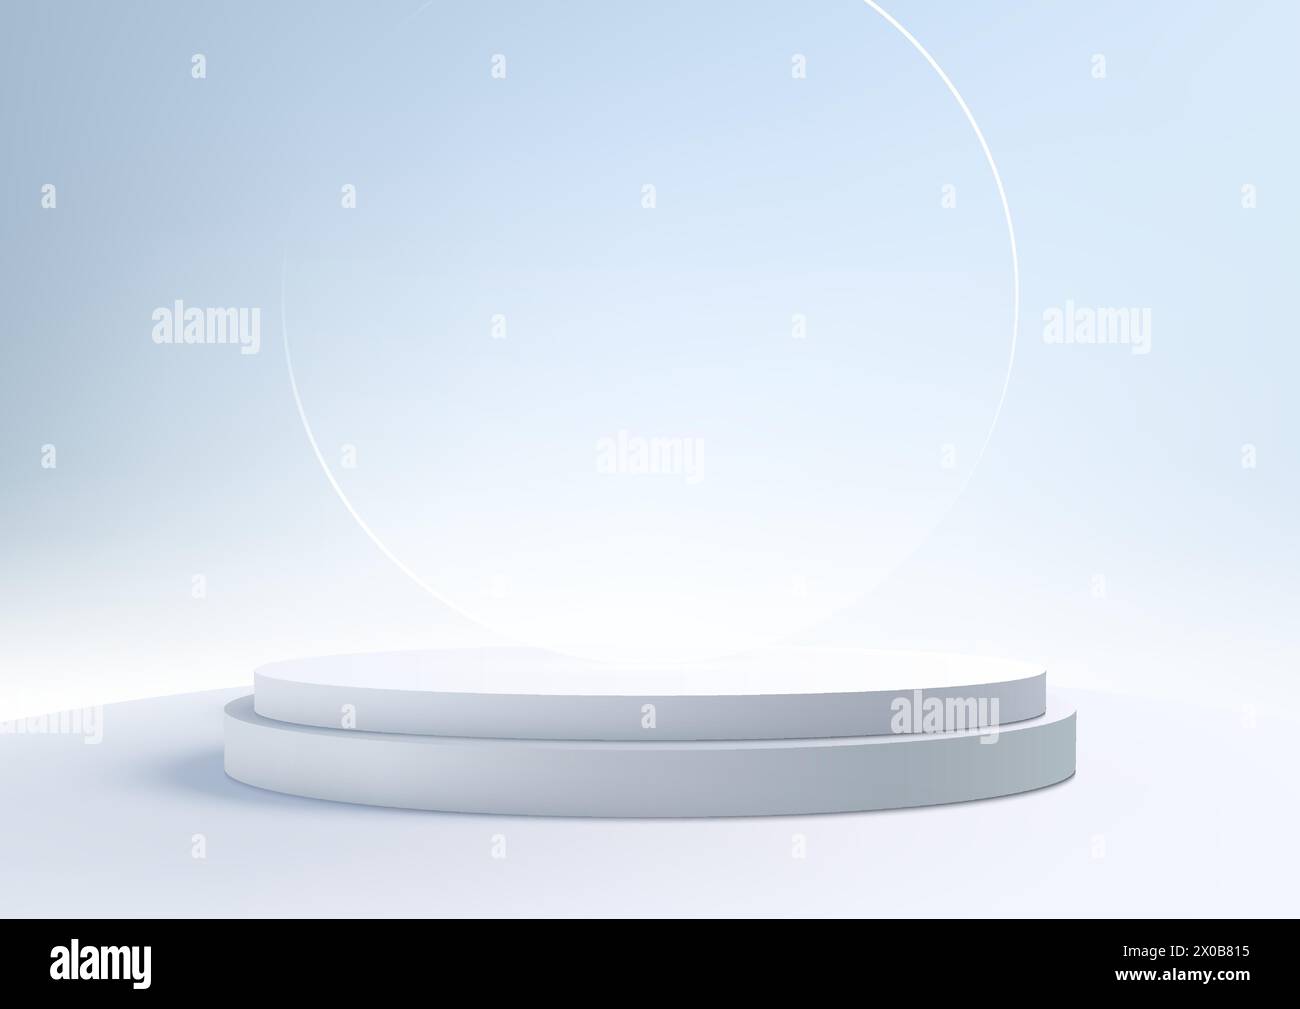 Le stand de podium blanc 3D avec fond de verre circulaire sur fond de ciel bleu est parfait pour les maquettes d'affichage de produit de concept d'intérieur moderne. Vecteur illustr Illustration de Vecteur